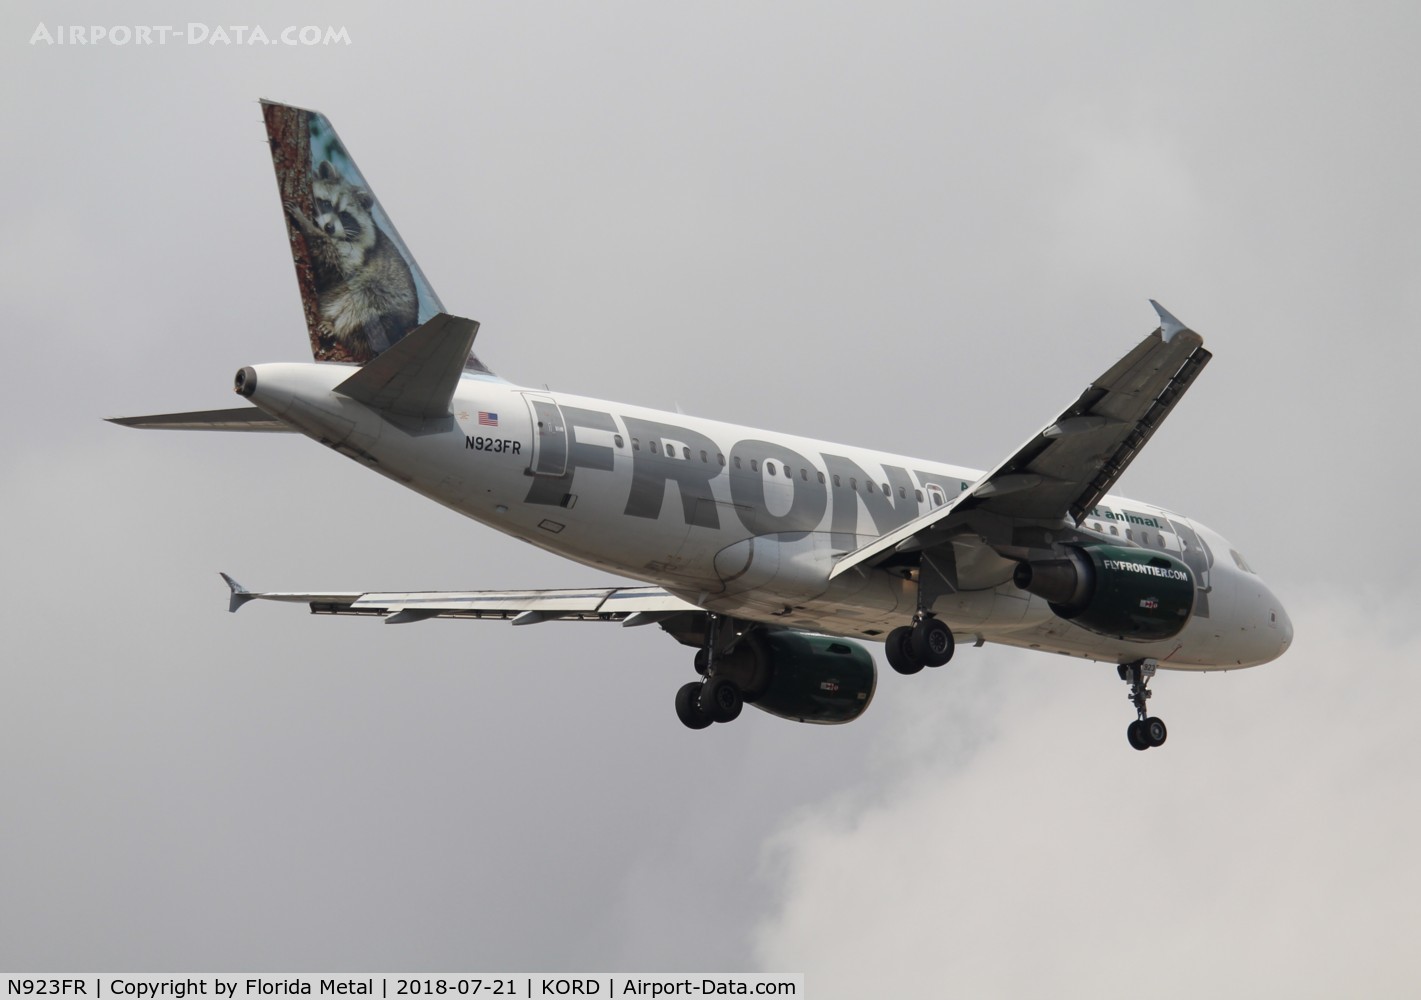 N923FR, 2003 Airbus A319-111 C/N 2019, Frontier